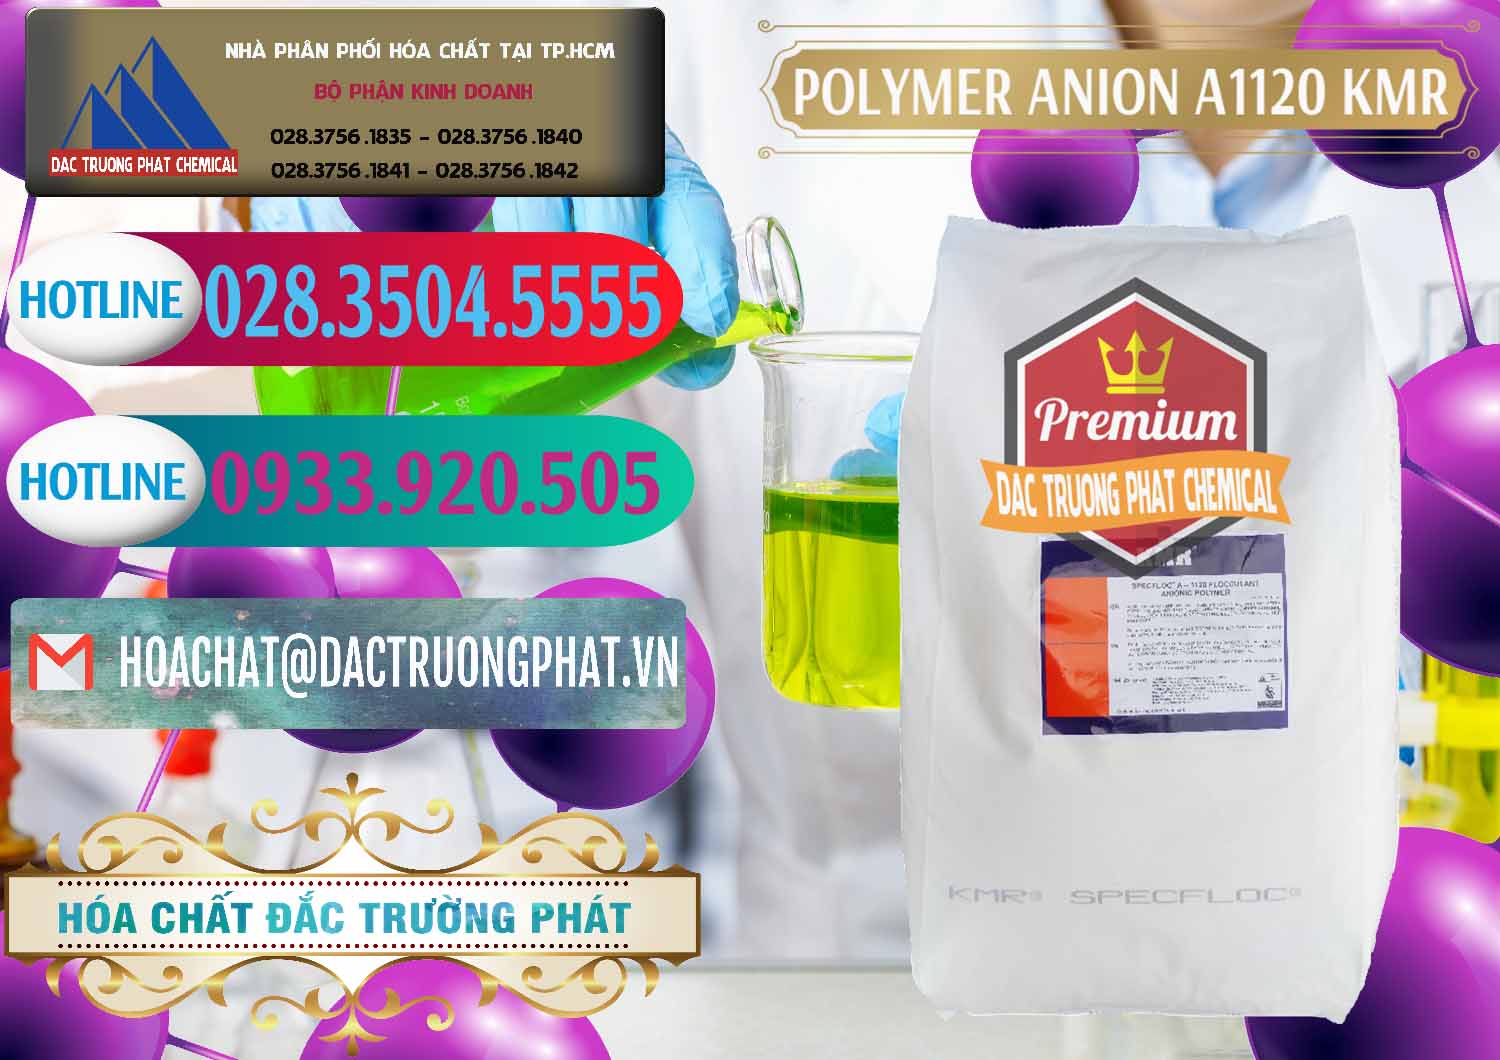 Kinh doanh ( bán ) Polymer Anion A1120 - KMR Anh Quốc England - 0119 - Cty cung cấp _ nhập khẩu hóa chất tại TP.HCM - truongphat.vn